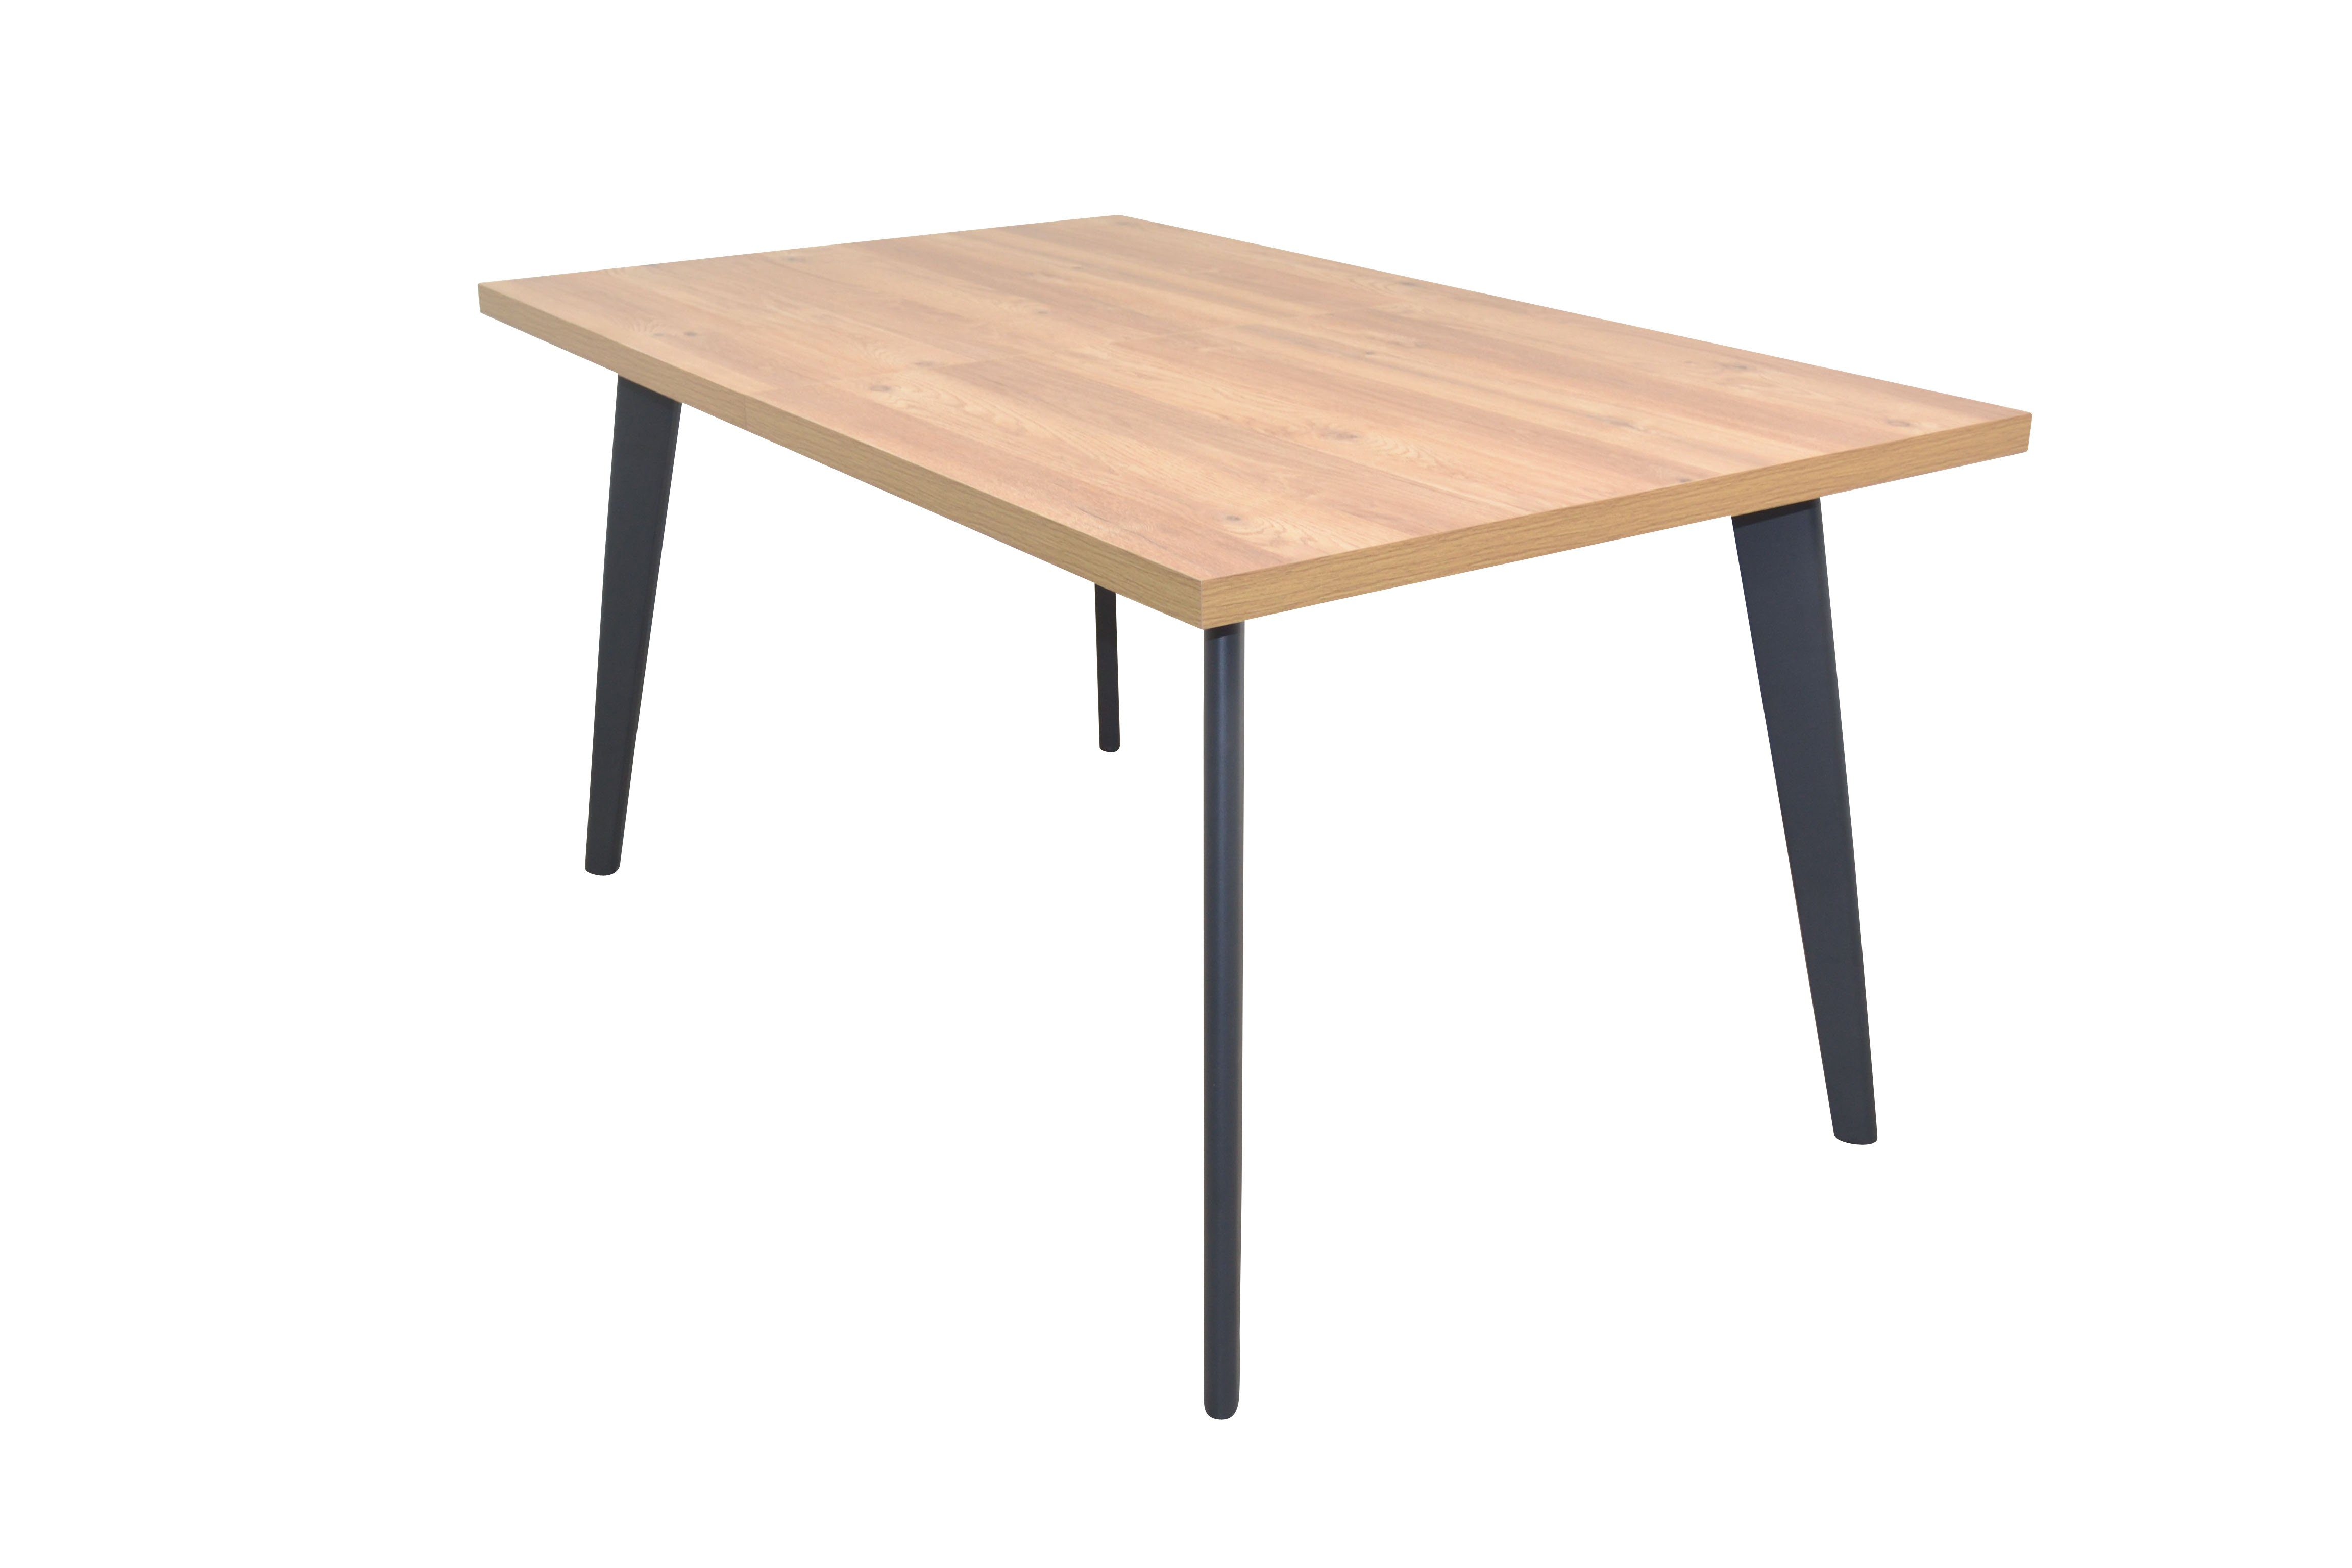 moebel-direkt-online Esstisch von 150 bis 210 cm ausziehbar (Größe 150x90 cm, bis auf gesamt 210 cm ausziehbar), Breite 150 cm, ausgezogen 210 cm